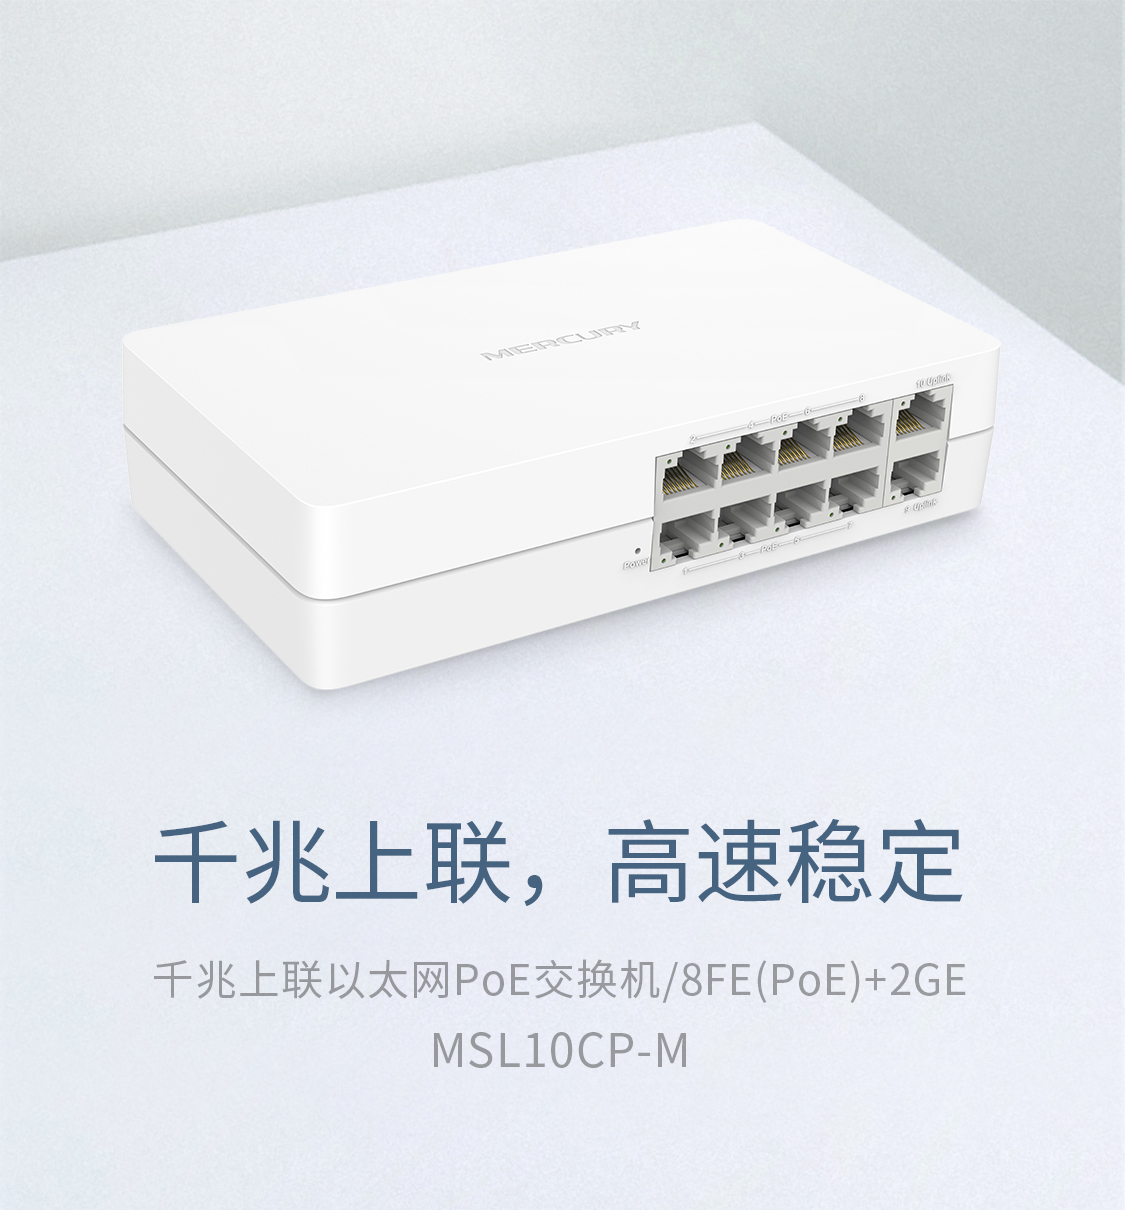 MSL10CP-M